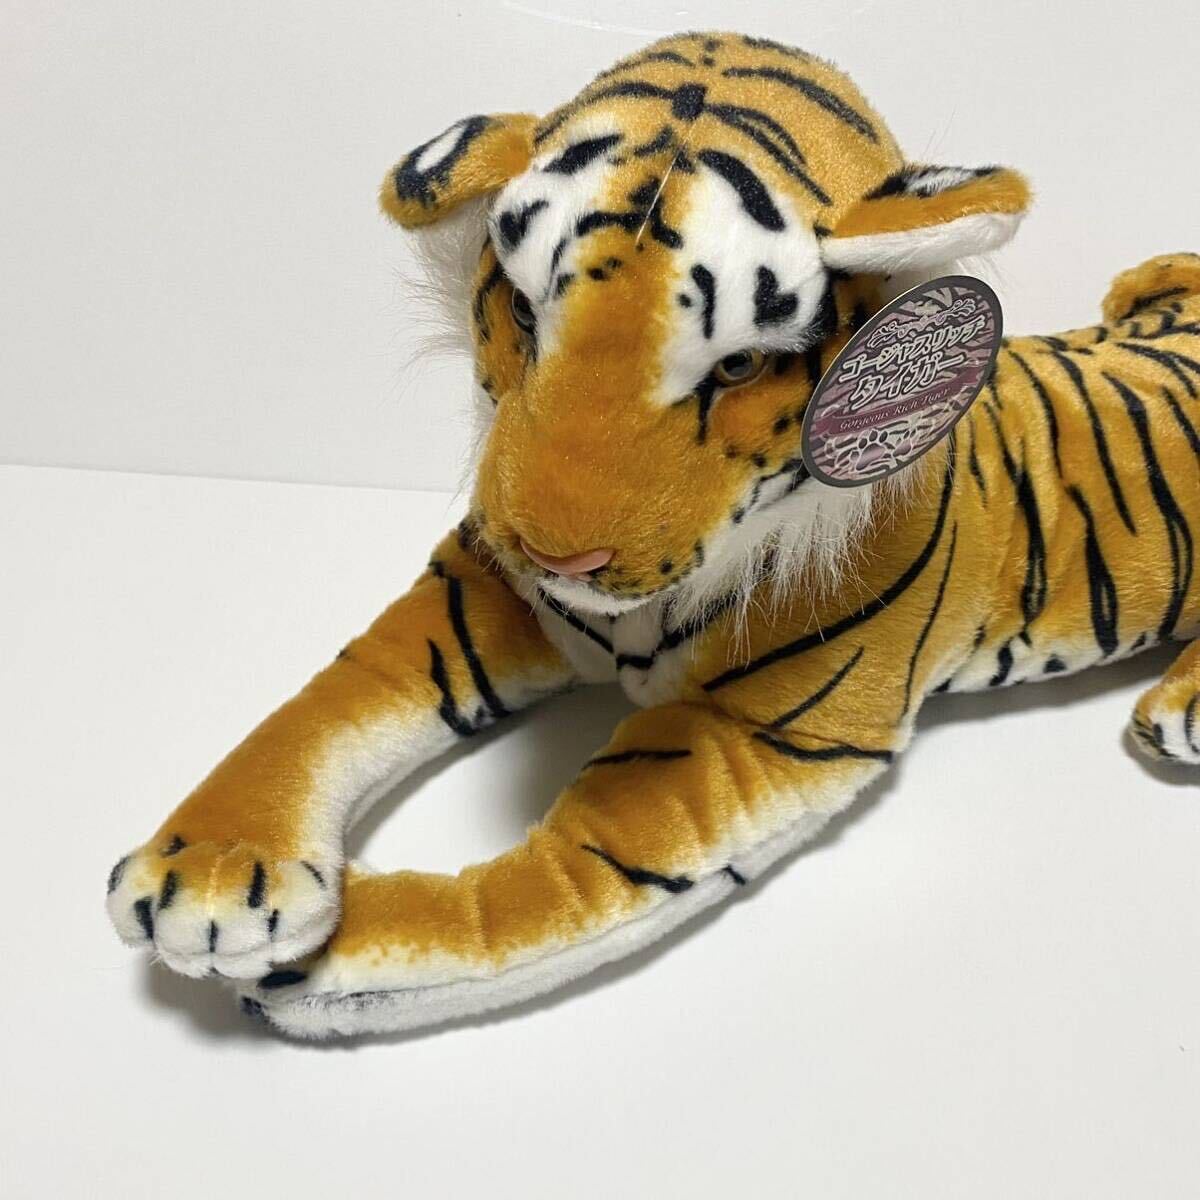  роскошный Ricci Tiger мягкая игрушка ... тигр 